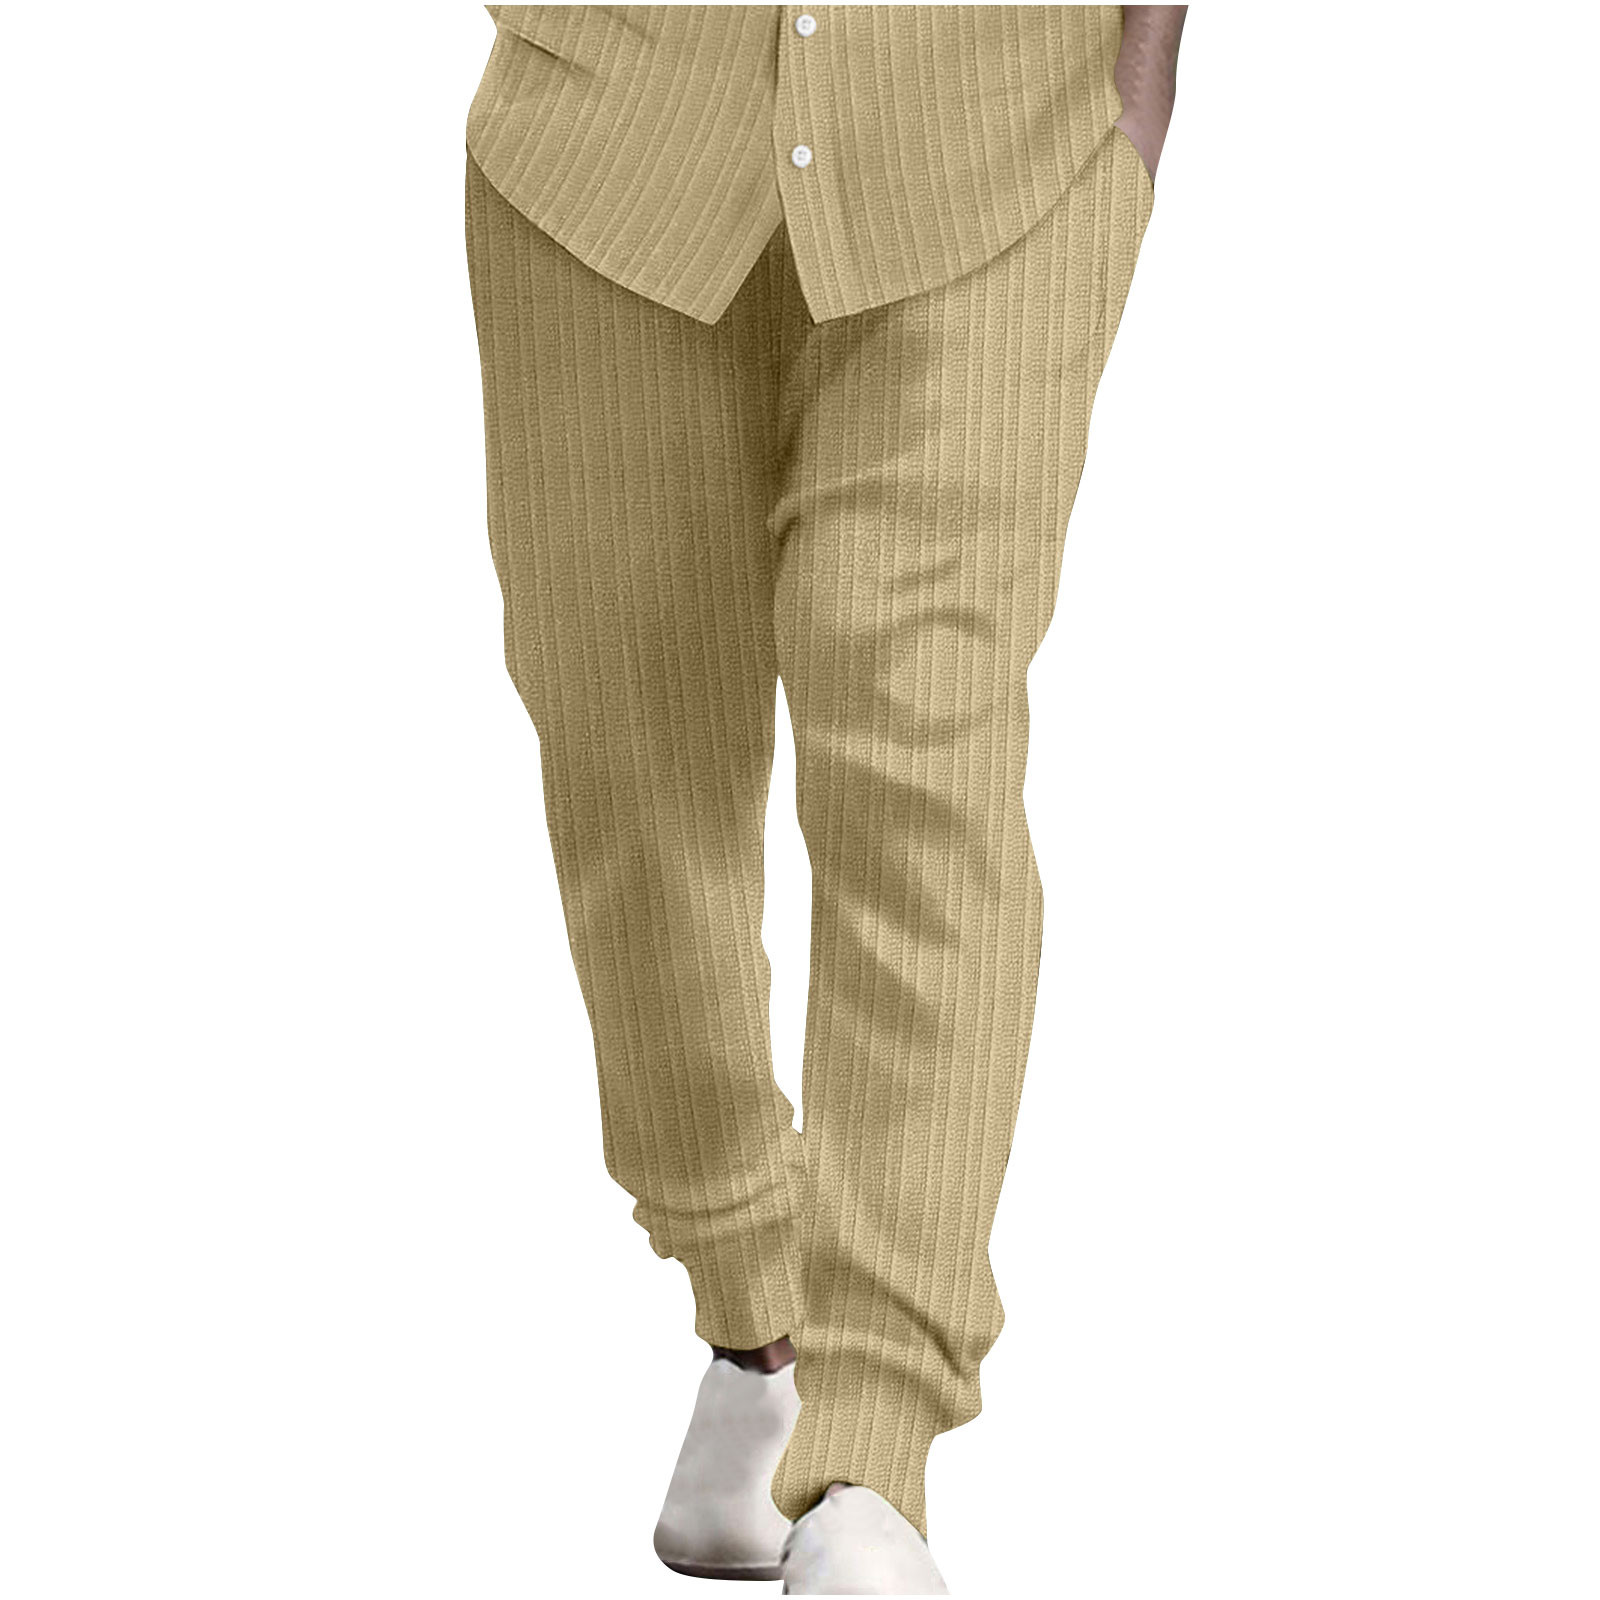 VSSSJ Men's Cotton and Linen Pants Slim Fit Striped Print Elastic Waist ...